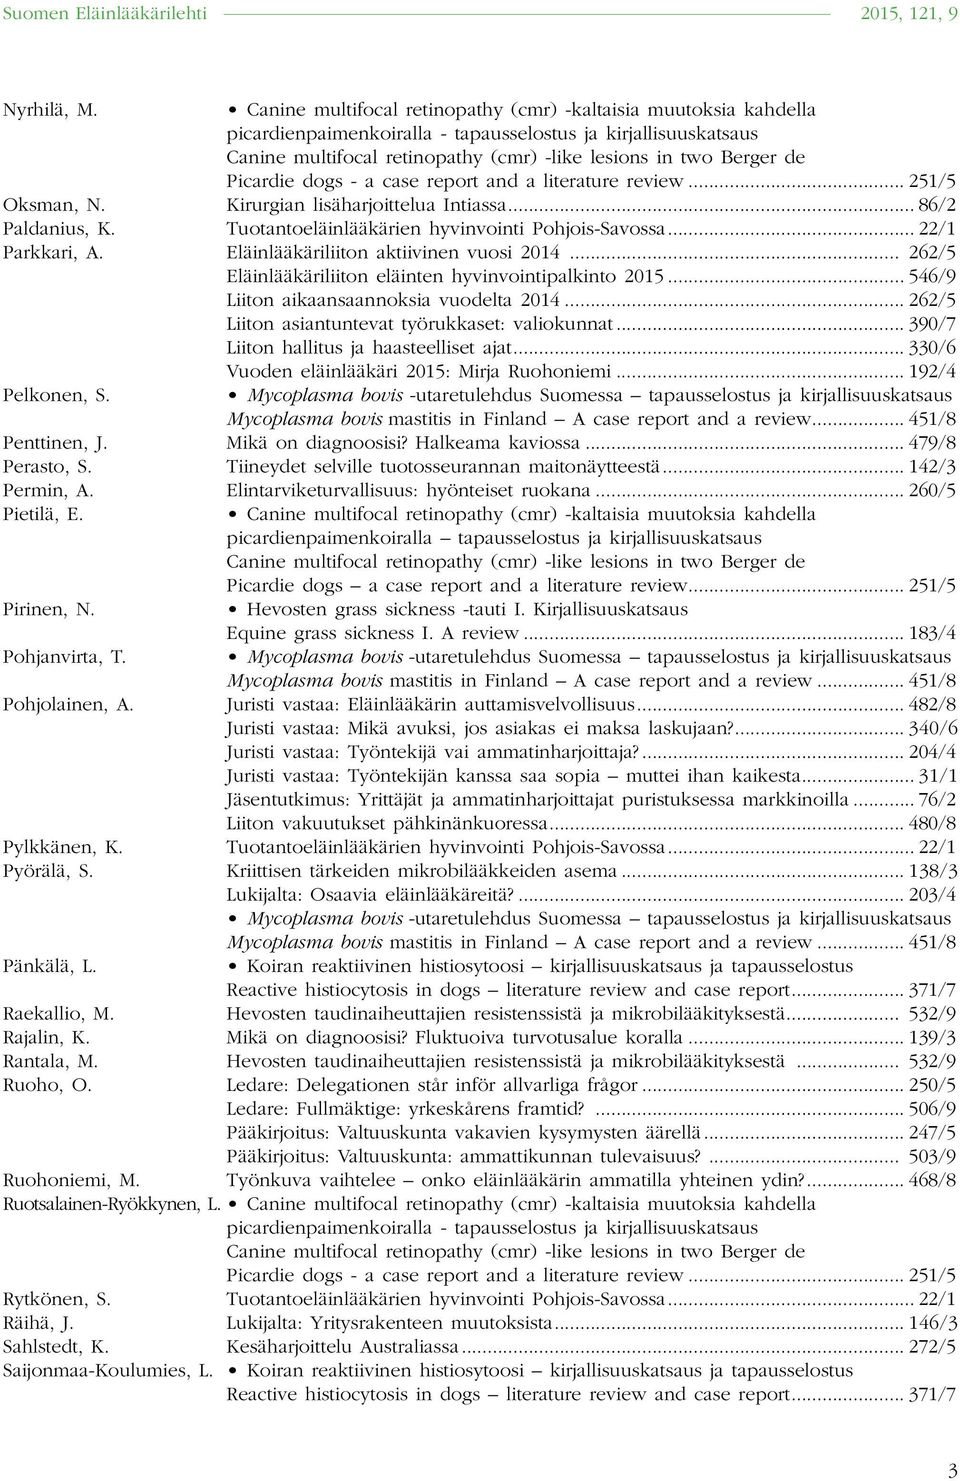 .. 390/7 Liiton hallitus ja haasteelliset ajat... 330/6 Pelkonen, S. Vuoden eläinlääkäri 2015: Mirja Ruohoniemi... 192/4 Mycoplasma bovis mastitis in Finland A case report and a review.